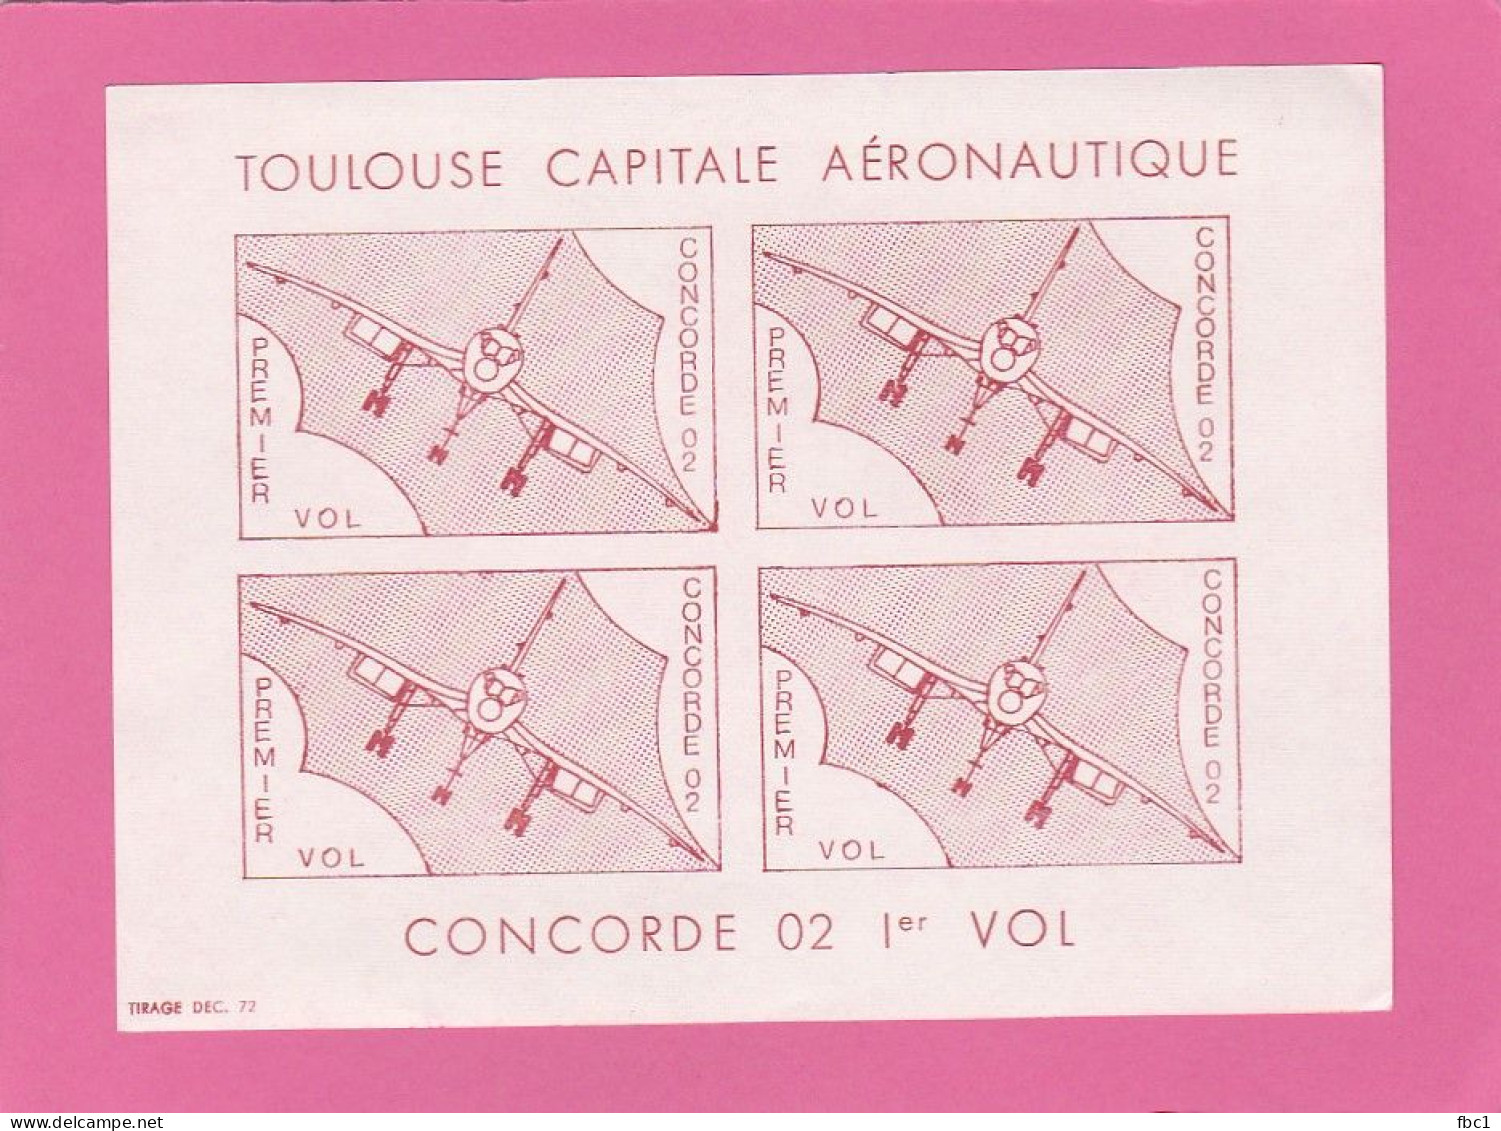 France - Vignette Toulouse Capitale Aéronautique - Concorde 02 1er Vol - Aviación